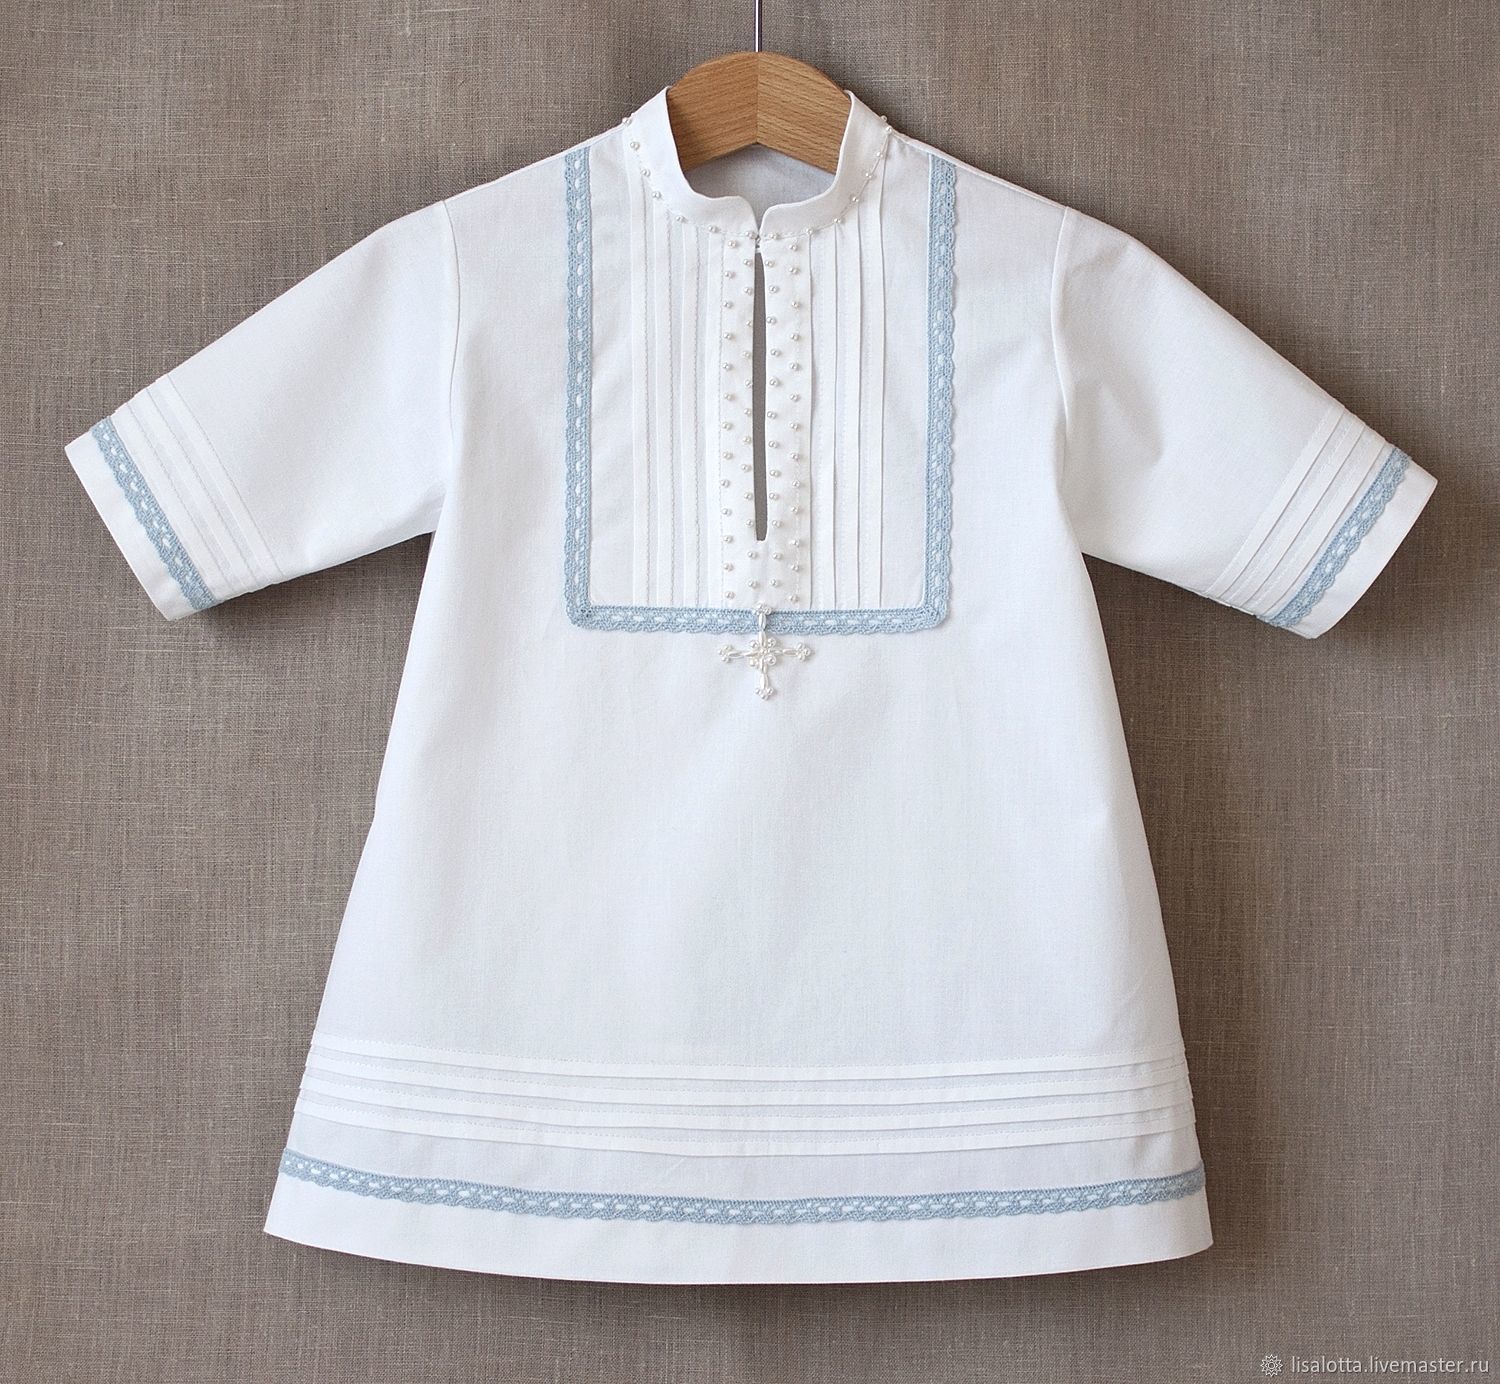 Купить оптом крестильную рубашку для детей Малыш